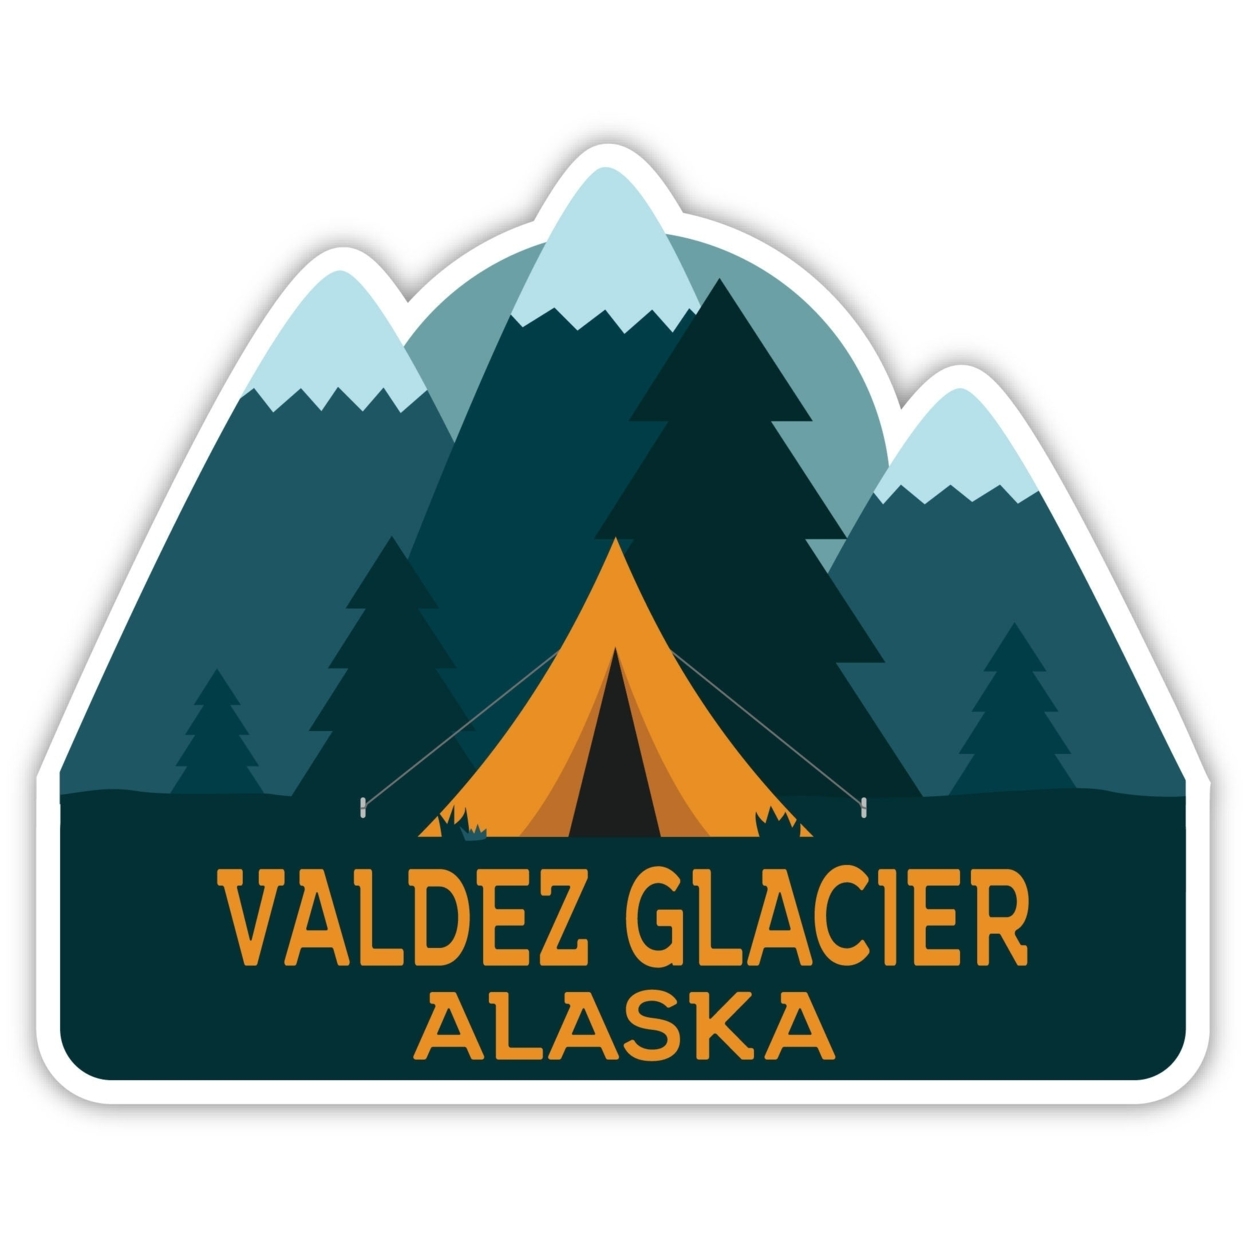 Valdez Glacier Alaska Souvenir Decorative Stickers (Choose Theme And Size) - Single Unit, 4-Inch, Tent